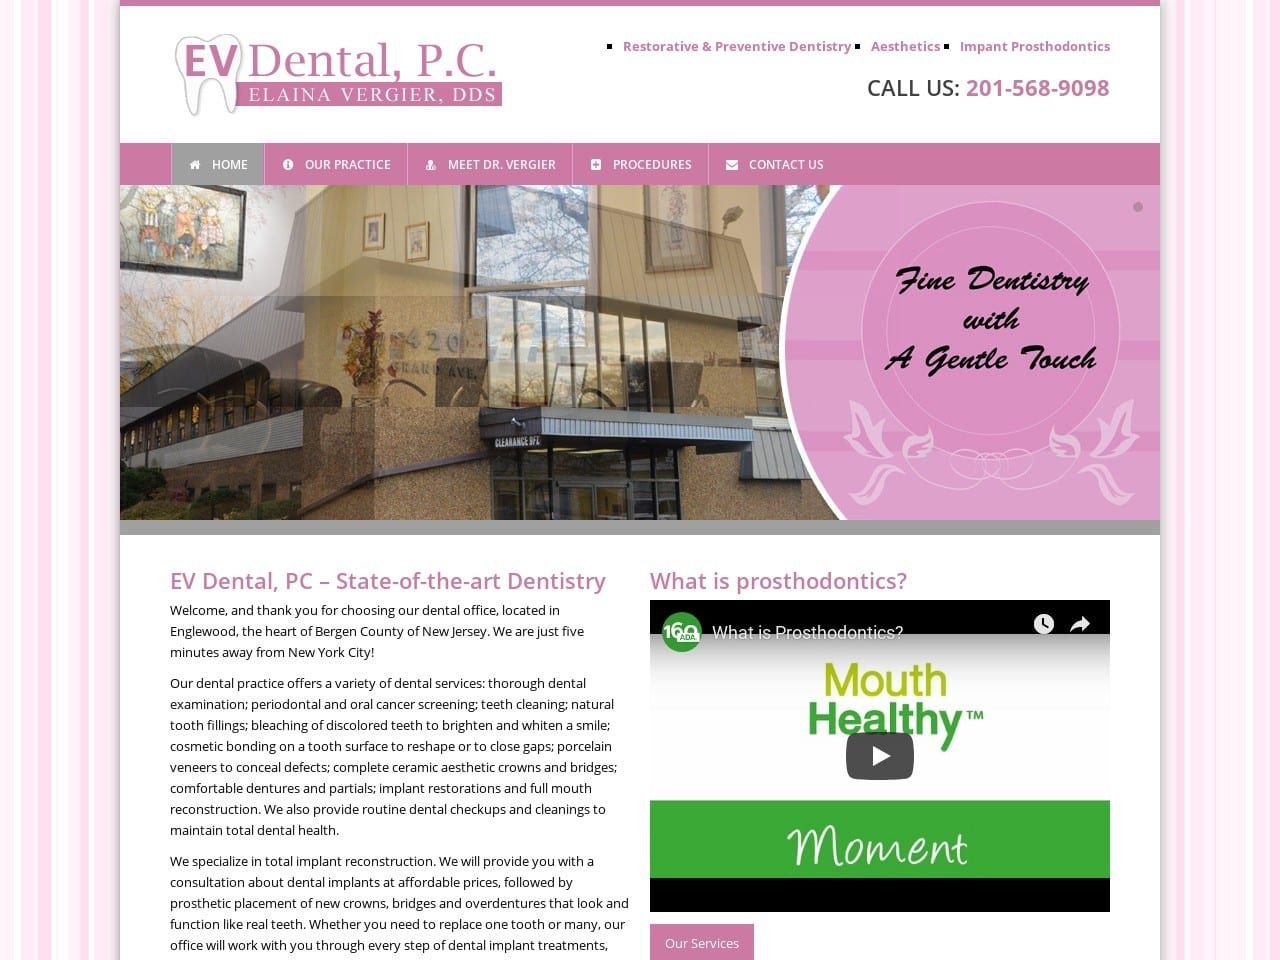 E V Dental Website Screenshot from evdentalpc.com